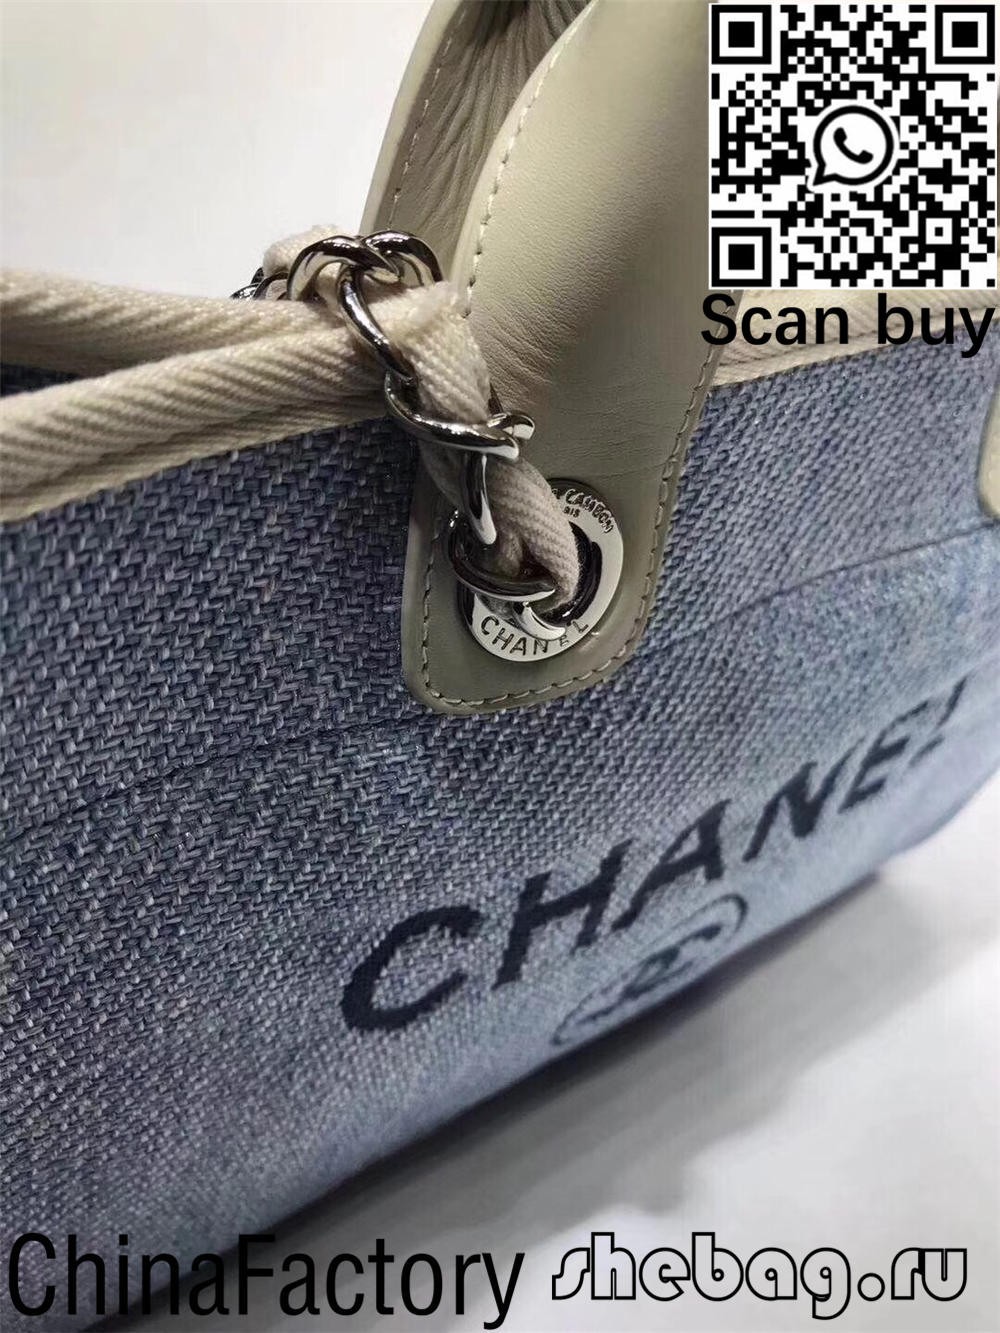 Chanel deauville canvas tas-sak beste kwaliteit replika Dubai (2022 opgedateer)-beste kwaliteit vals Louis Vuitton sak aanlyn winkel, replika ontwerper sak ru